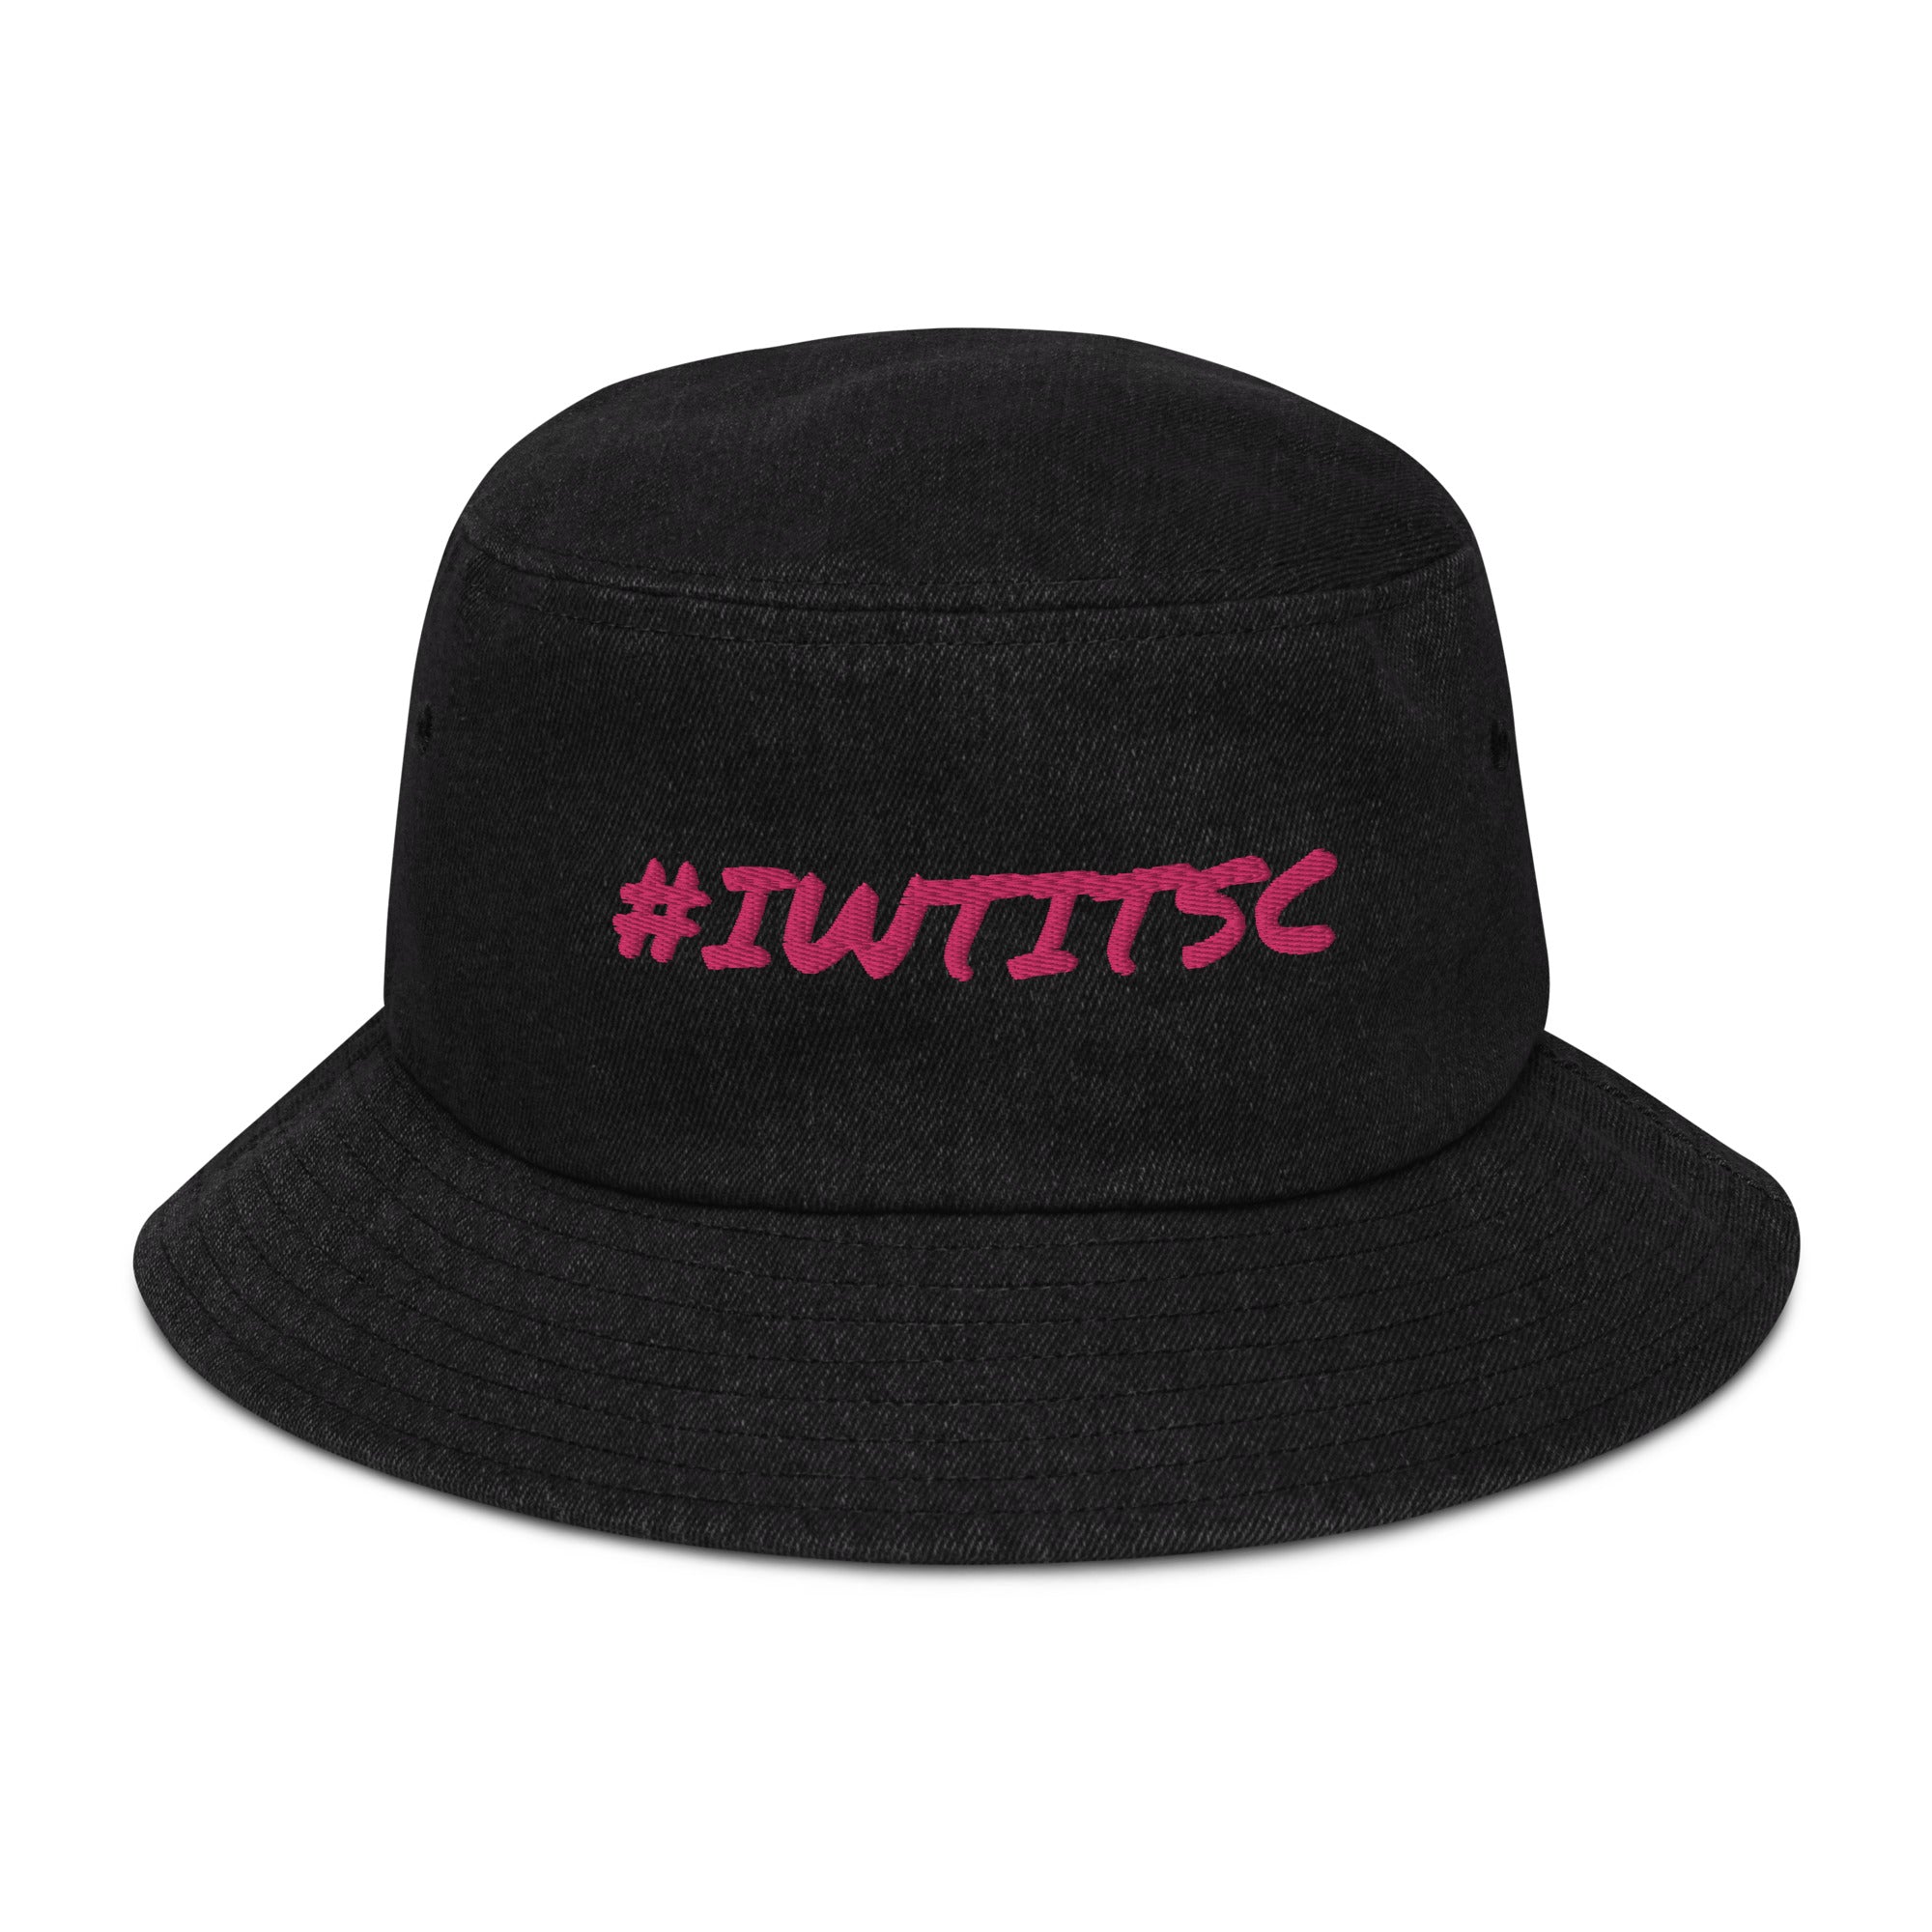 #IWTITSC Blk Denim bucket hat